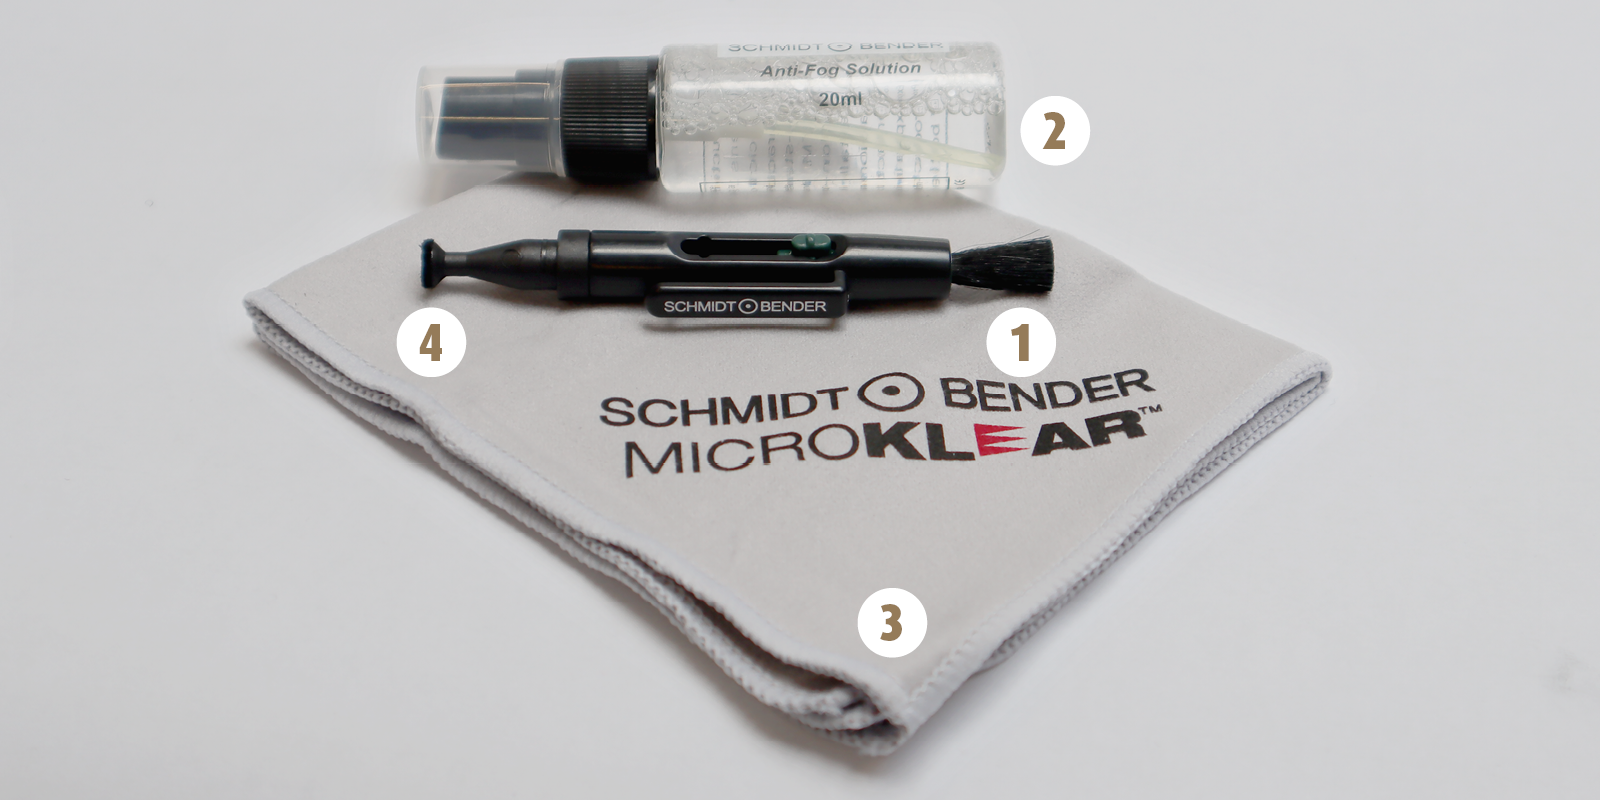 Tutti i prodotti del kit di pulizia insieme: 1. pennello LensPen, 2. spray di pulizia, 3. panno in microfibra e 4. tampone in microfibra LensPen